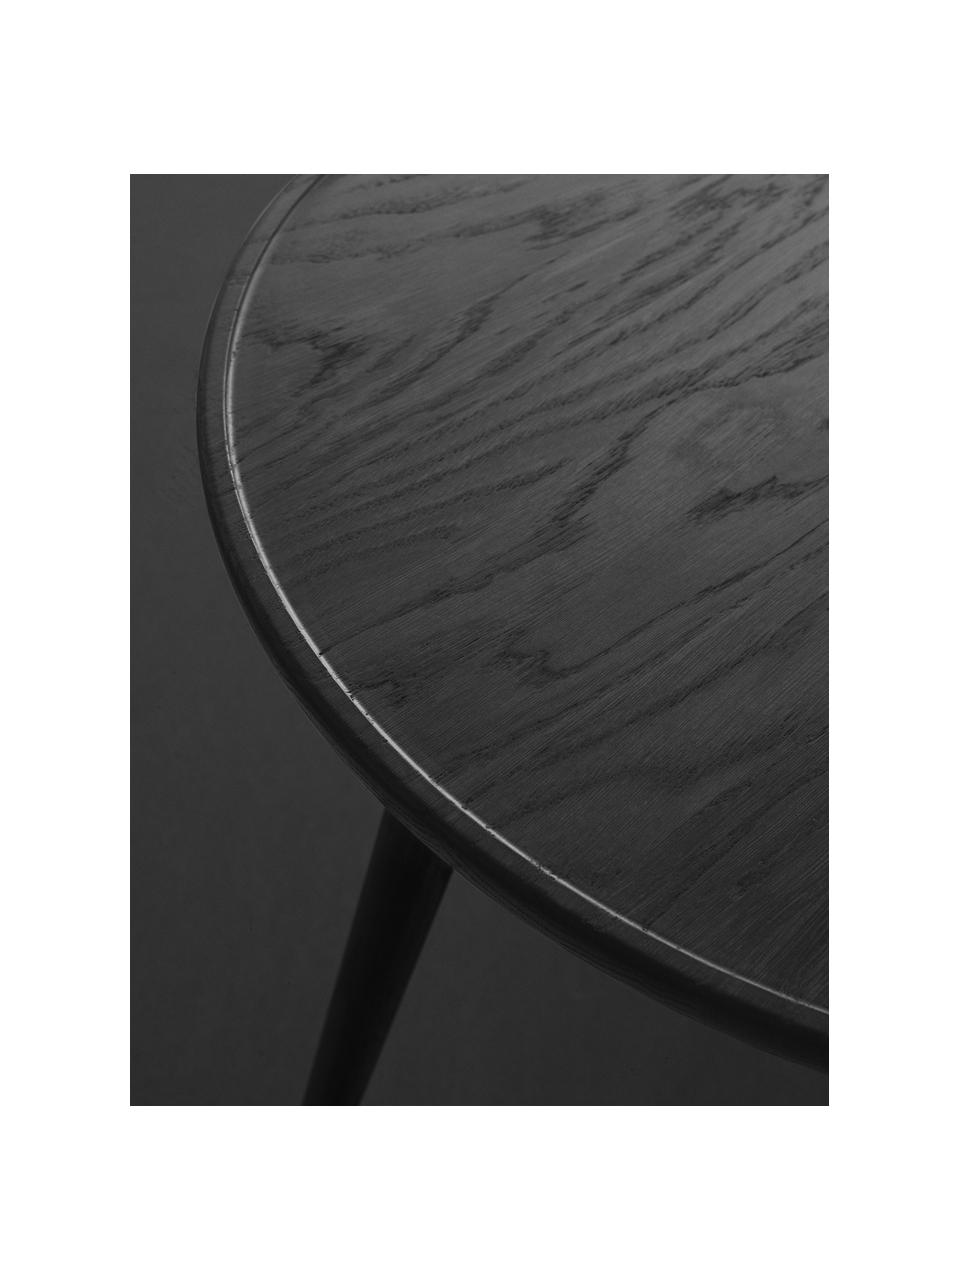 Runder Beistelltisch Accent aus Eichenholz, handgefertigt, Eichenholz

Dieses Produkt wird aus nachhaltig gewonnenem, FSC®-zertifiziertem Holz gefertigt., Eichenholz, schwarz lackiert, Ø 45 x H 42 cm